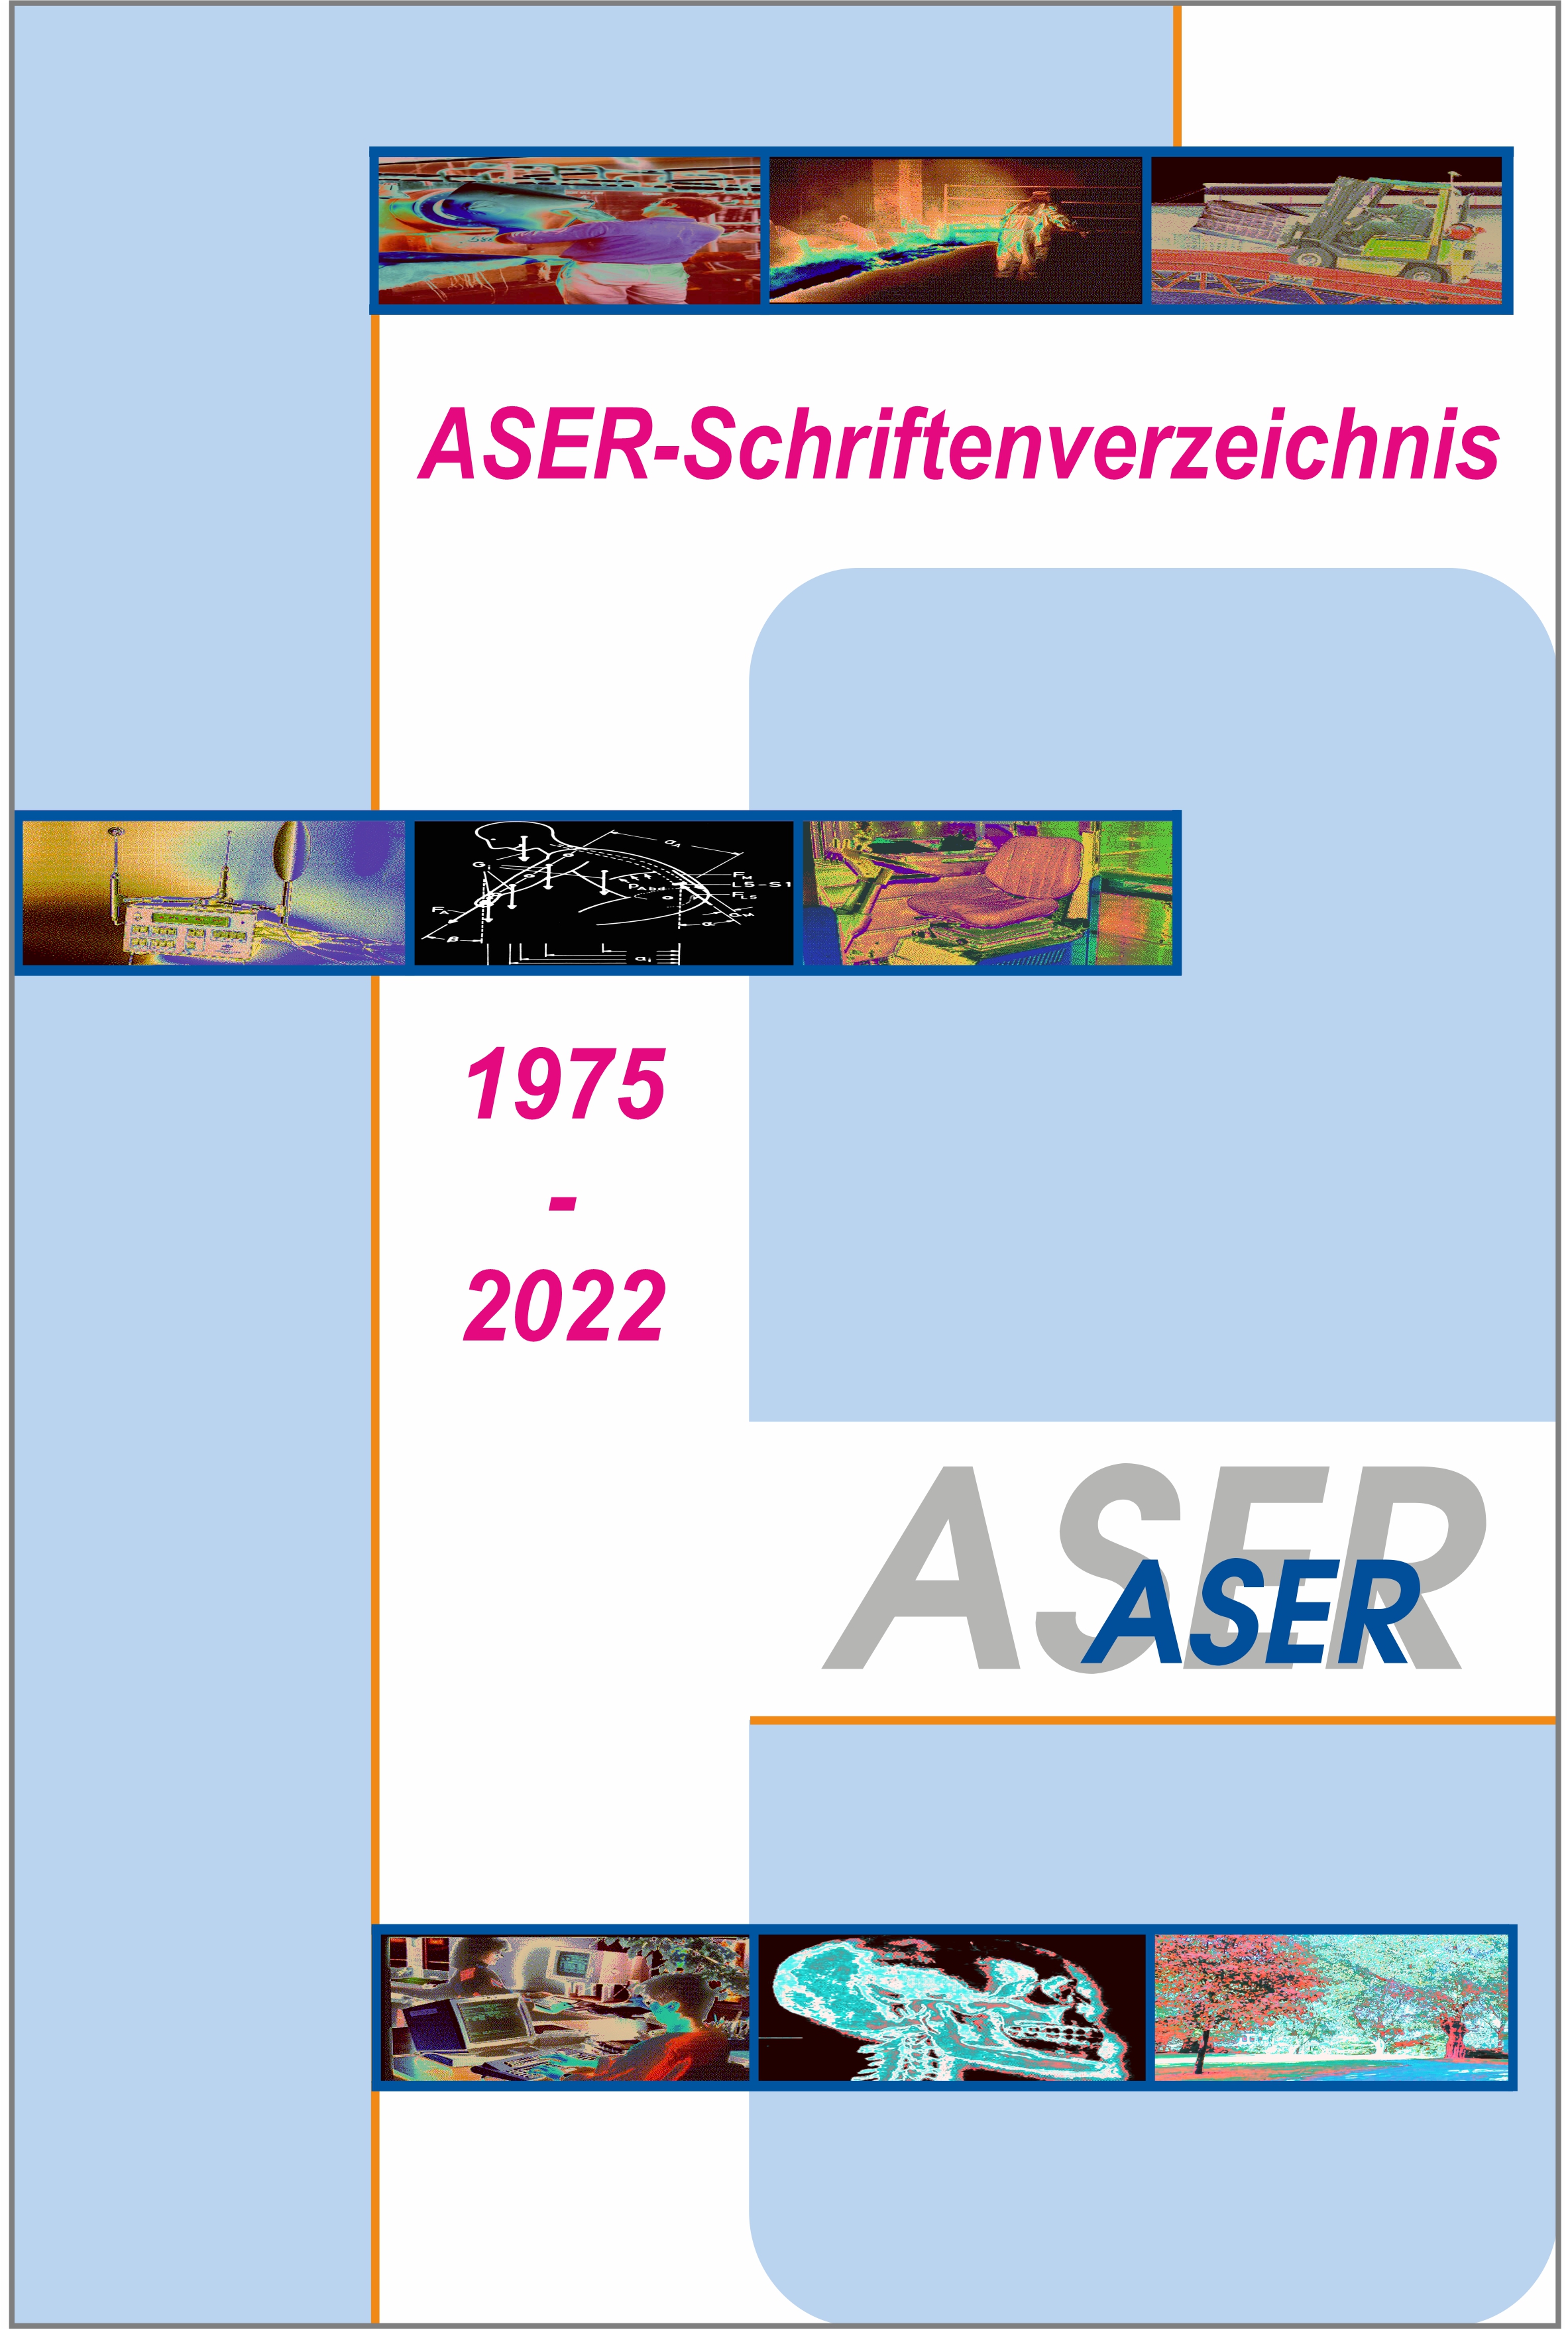 ASER-Schriftenverzeichnis 1975-2022